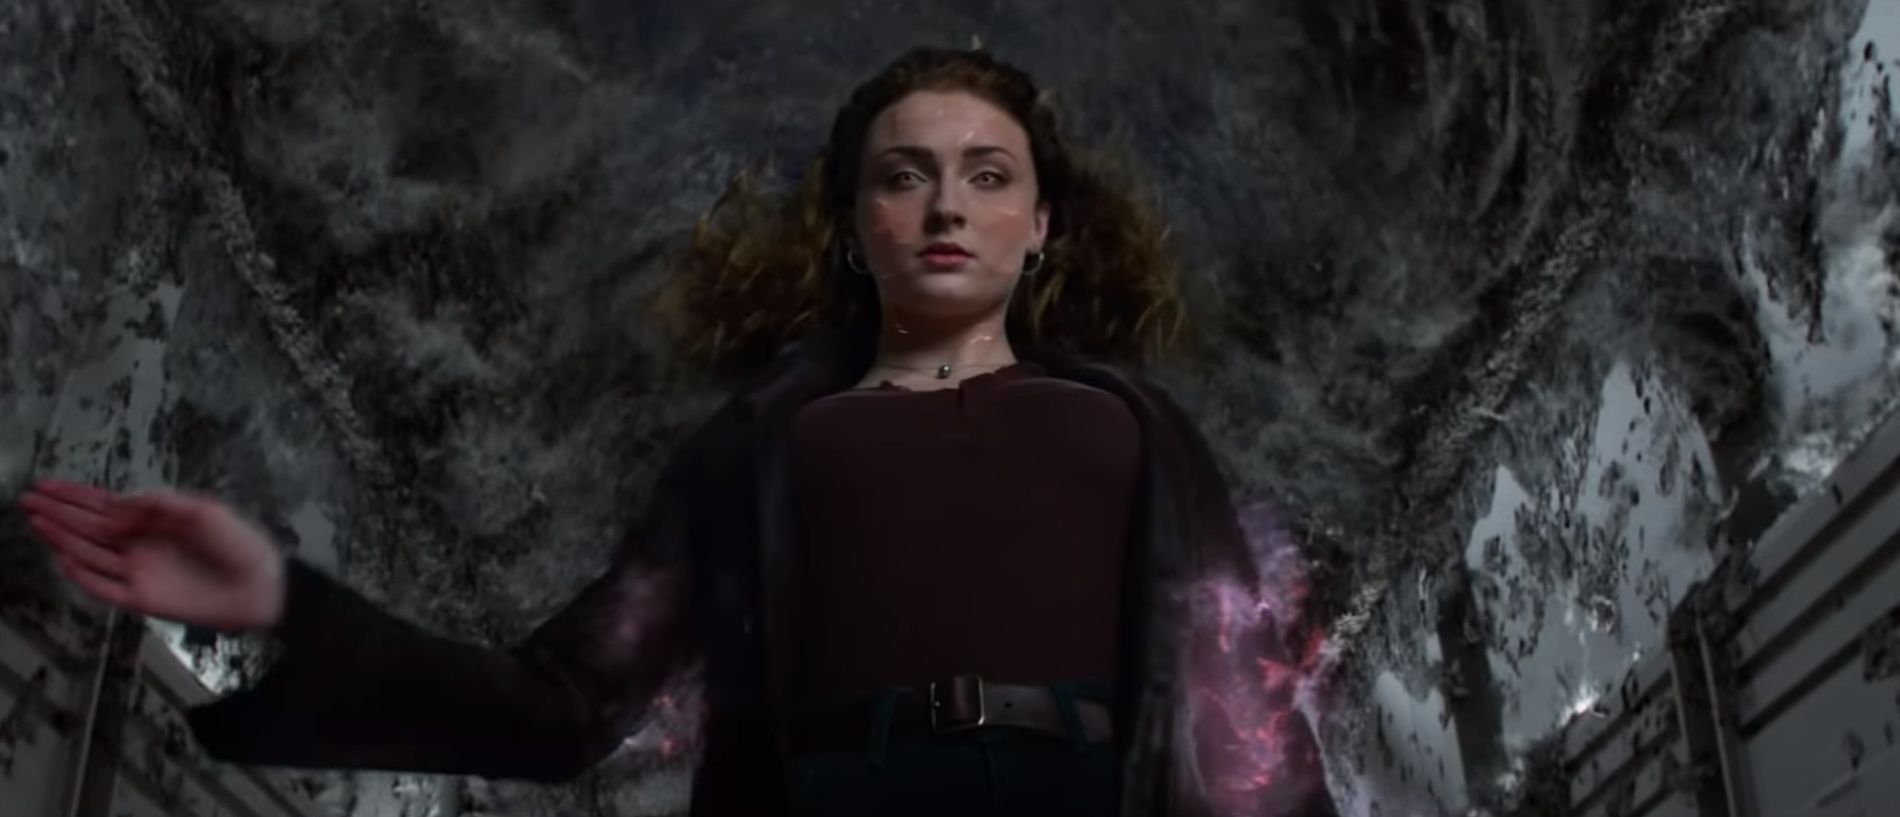 Jean Grey u ultimativnom gubitku samokontrole postaje ‘Dark Phoenix’: trailer